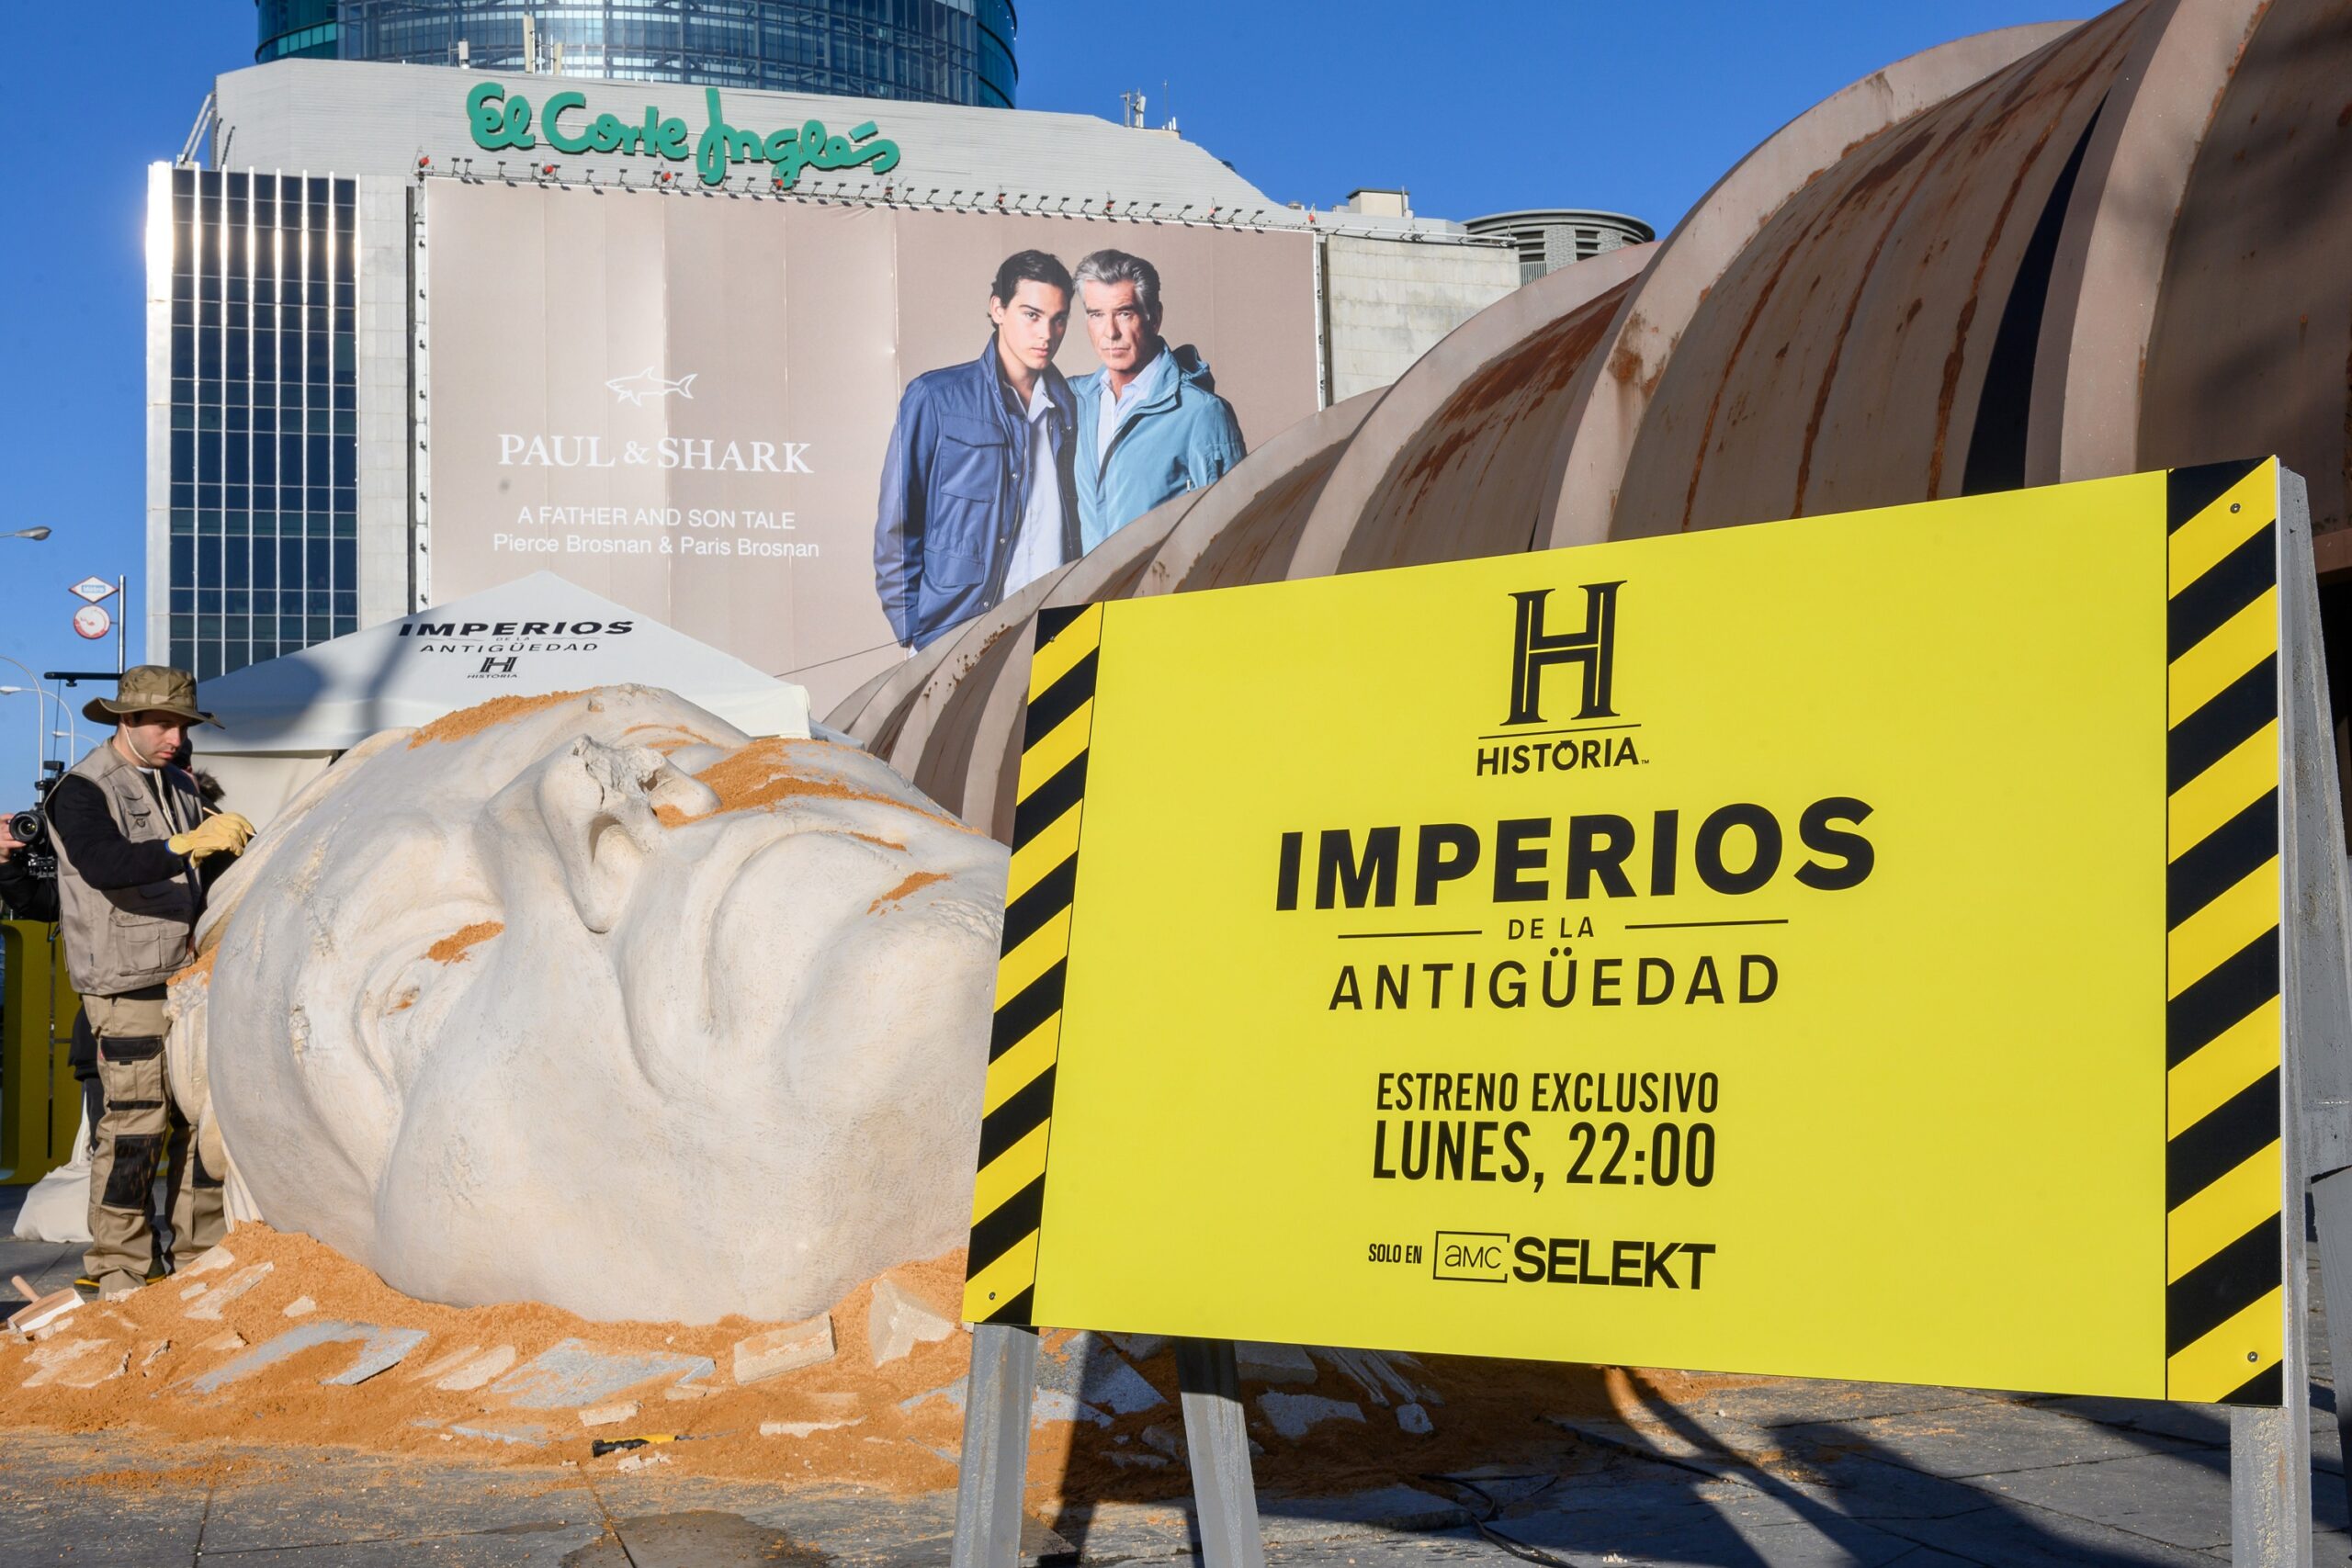 Canal HISTORIA recrea una excavación arqueológica en Madrid con motivo del estreno de ‘Imperios de la Antigüedad’